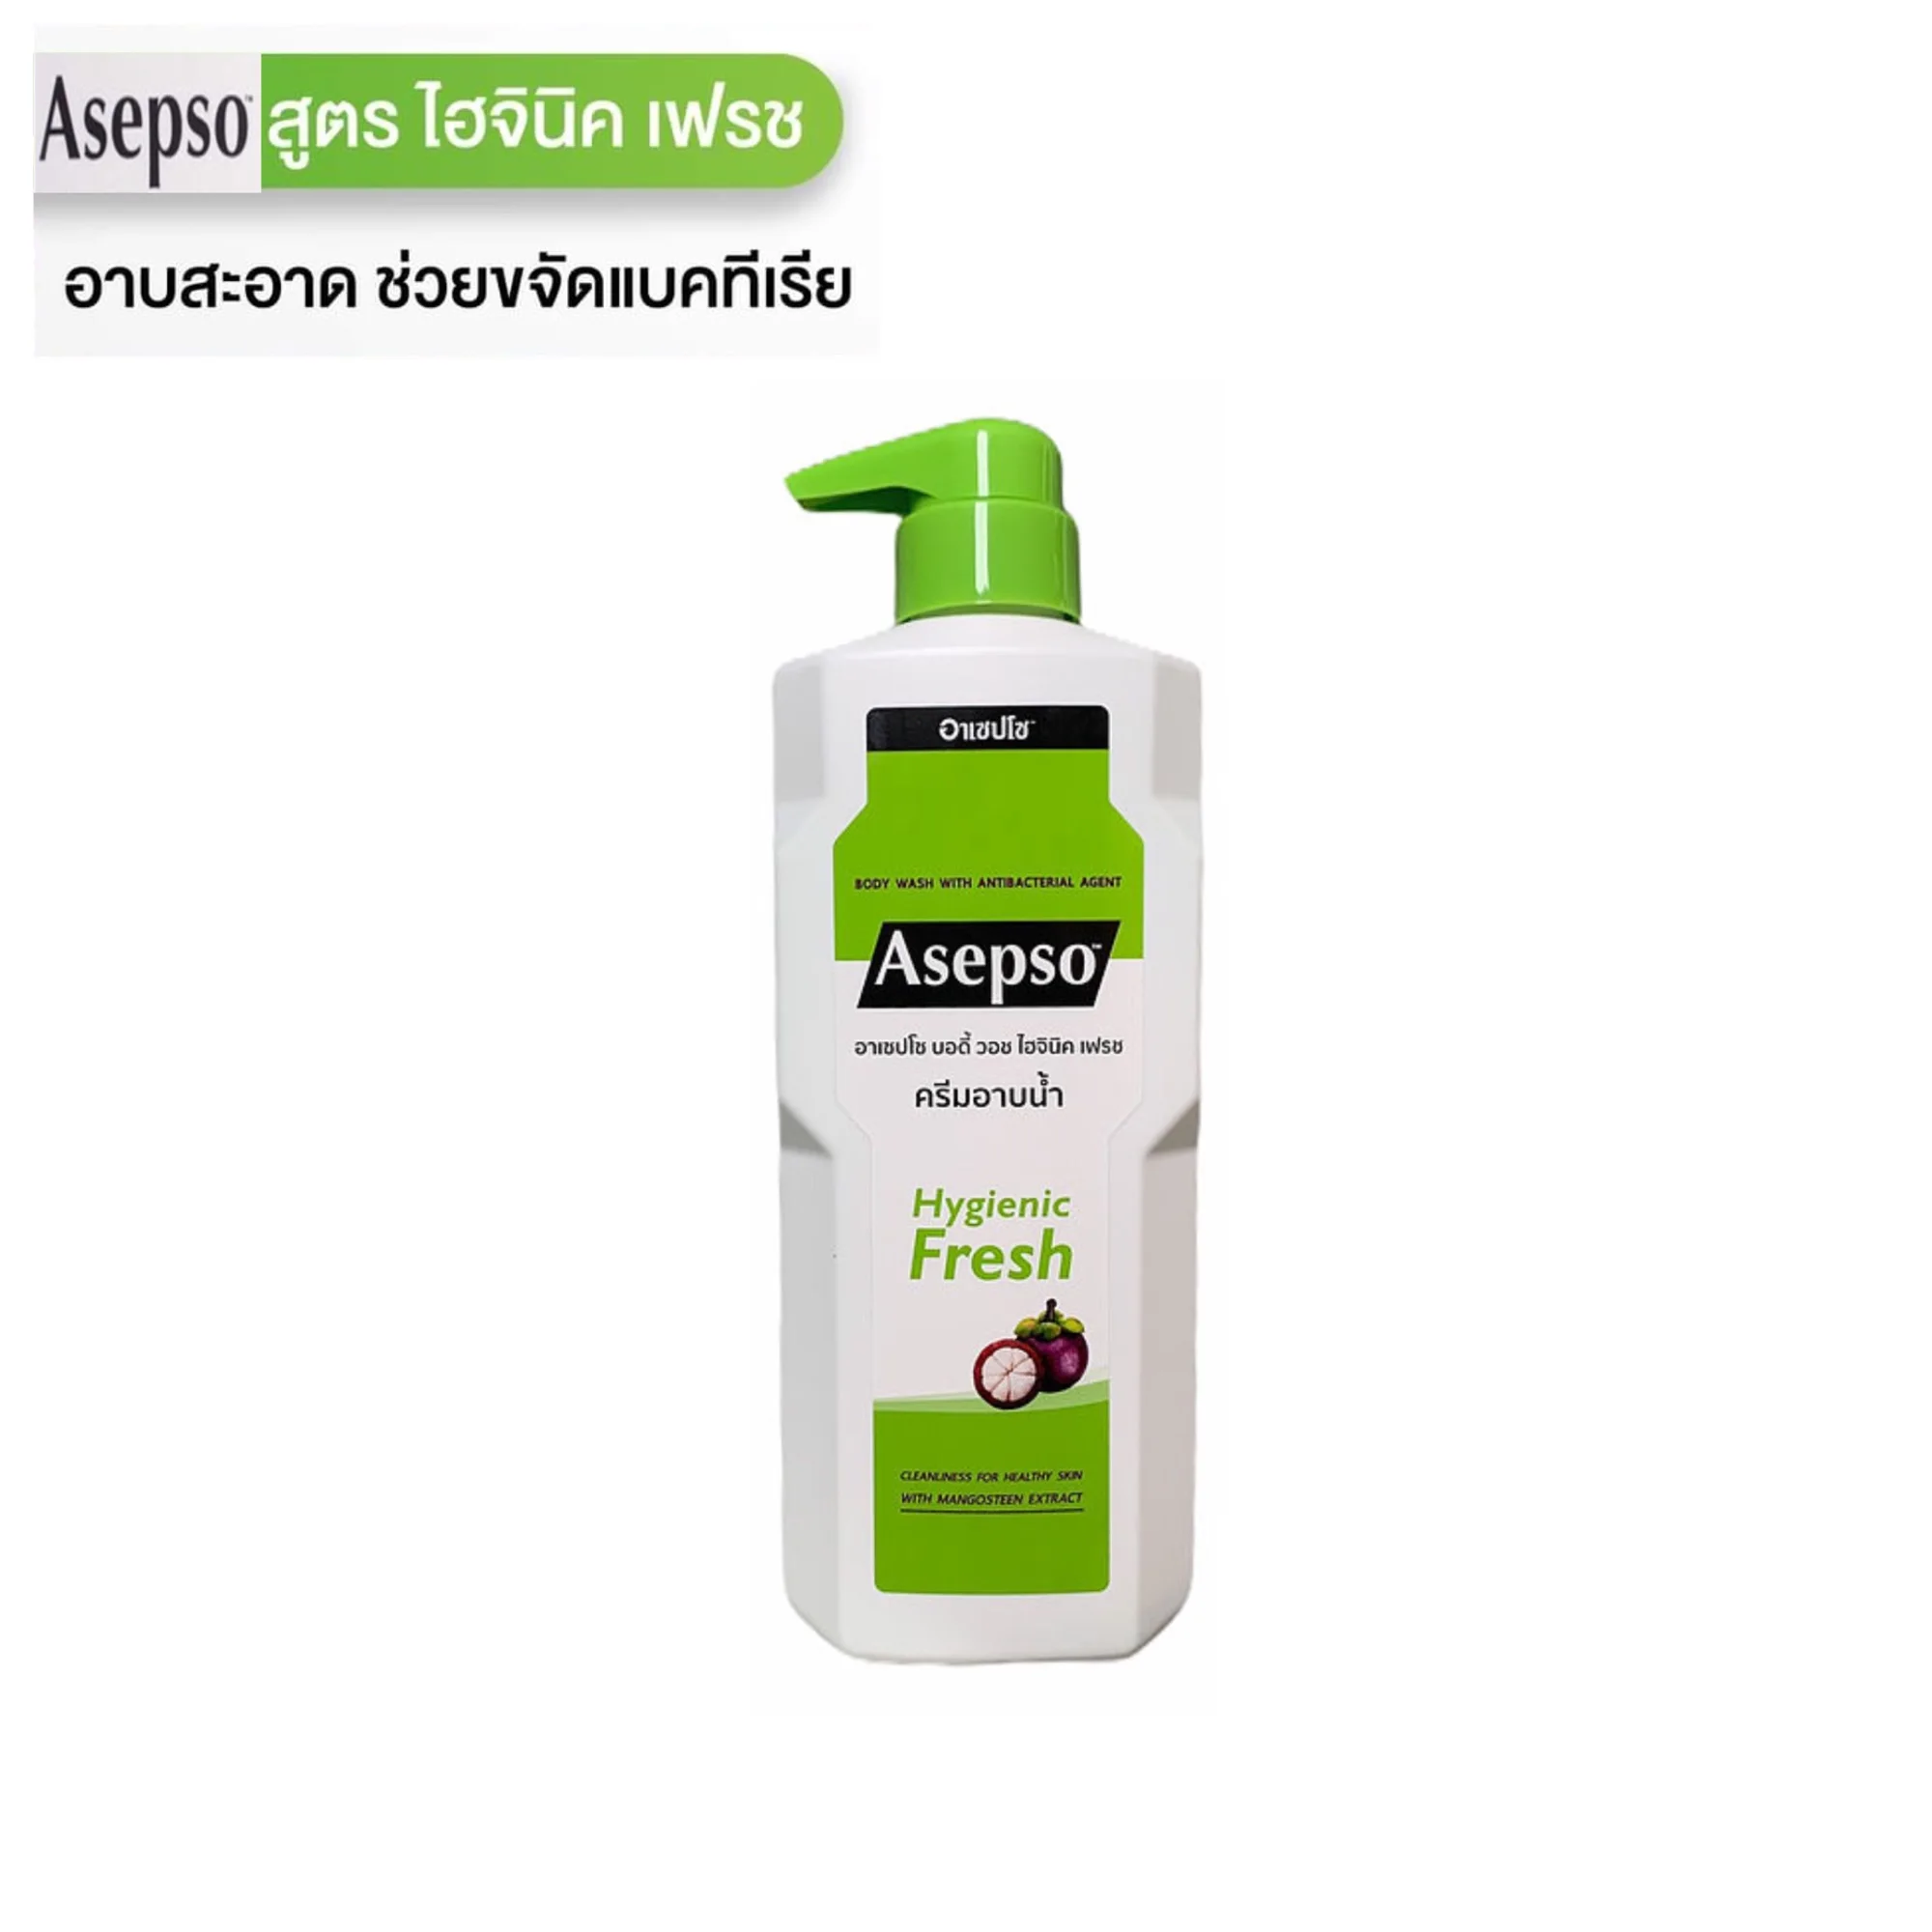 Asepso body wash -hygienic fresh500ml. ครีมอาบน้ำ อาเซปโซ สูตรไฮจินิค เฟรช500มล.